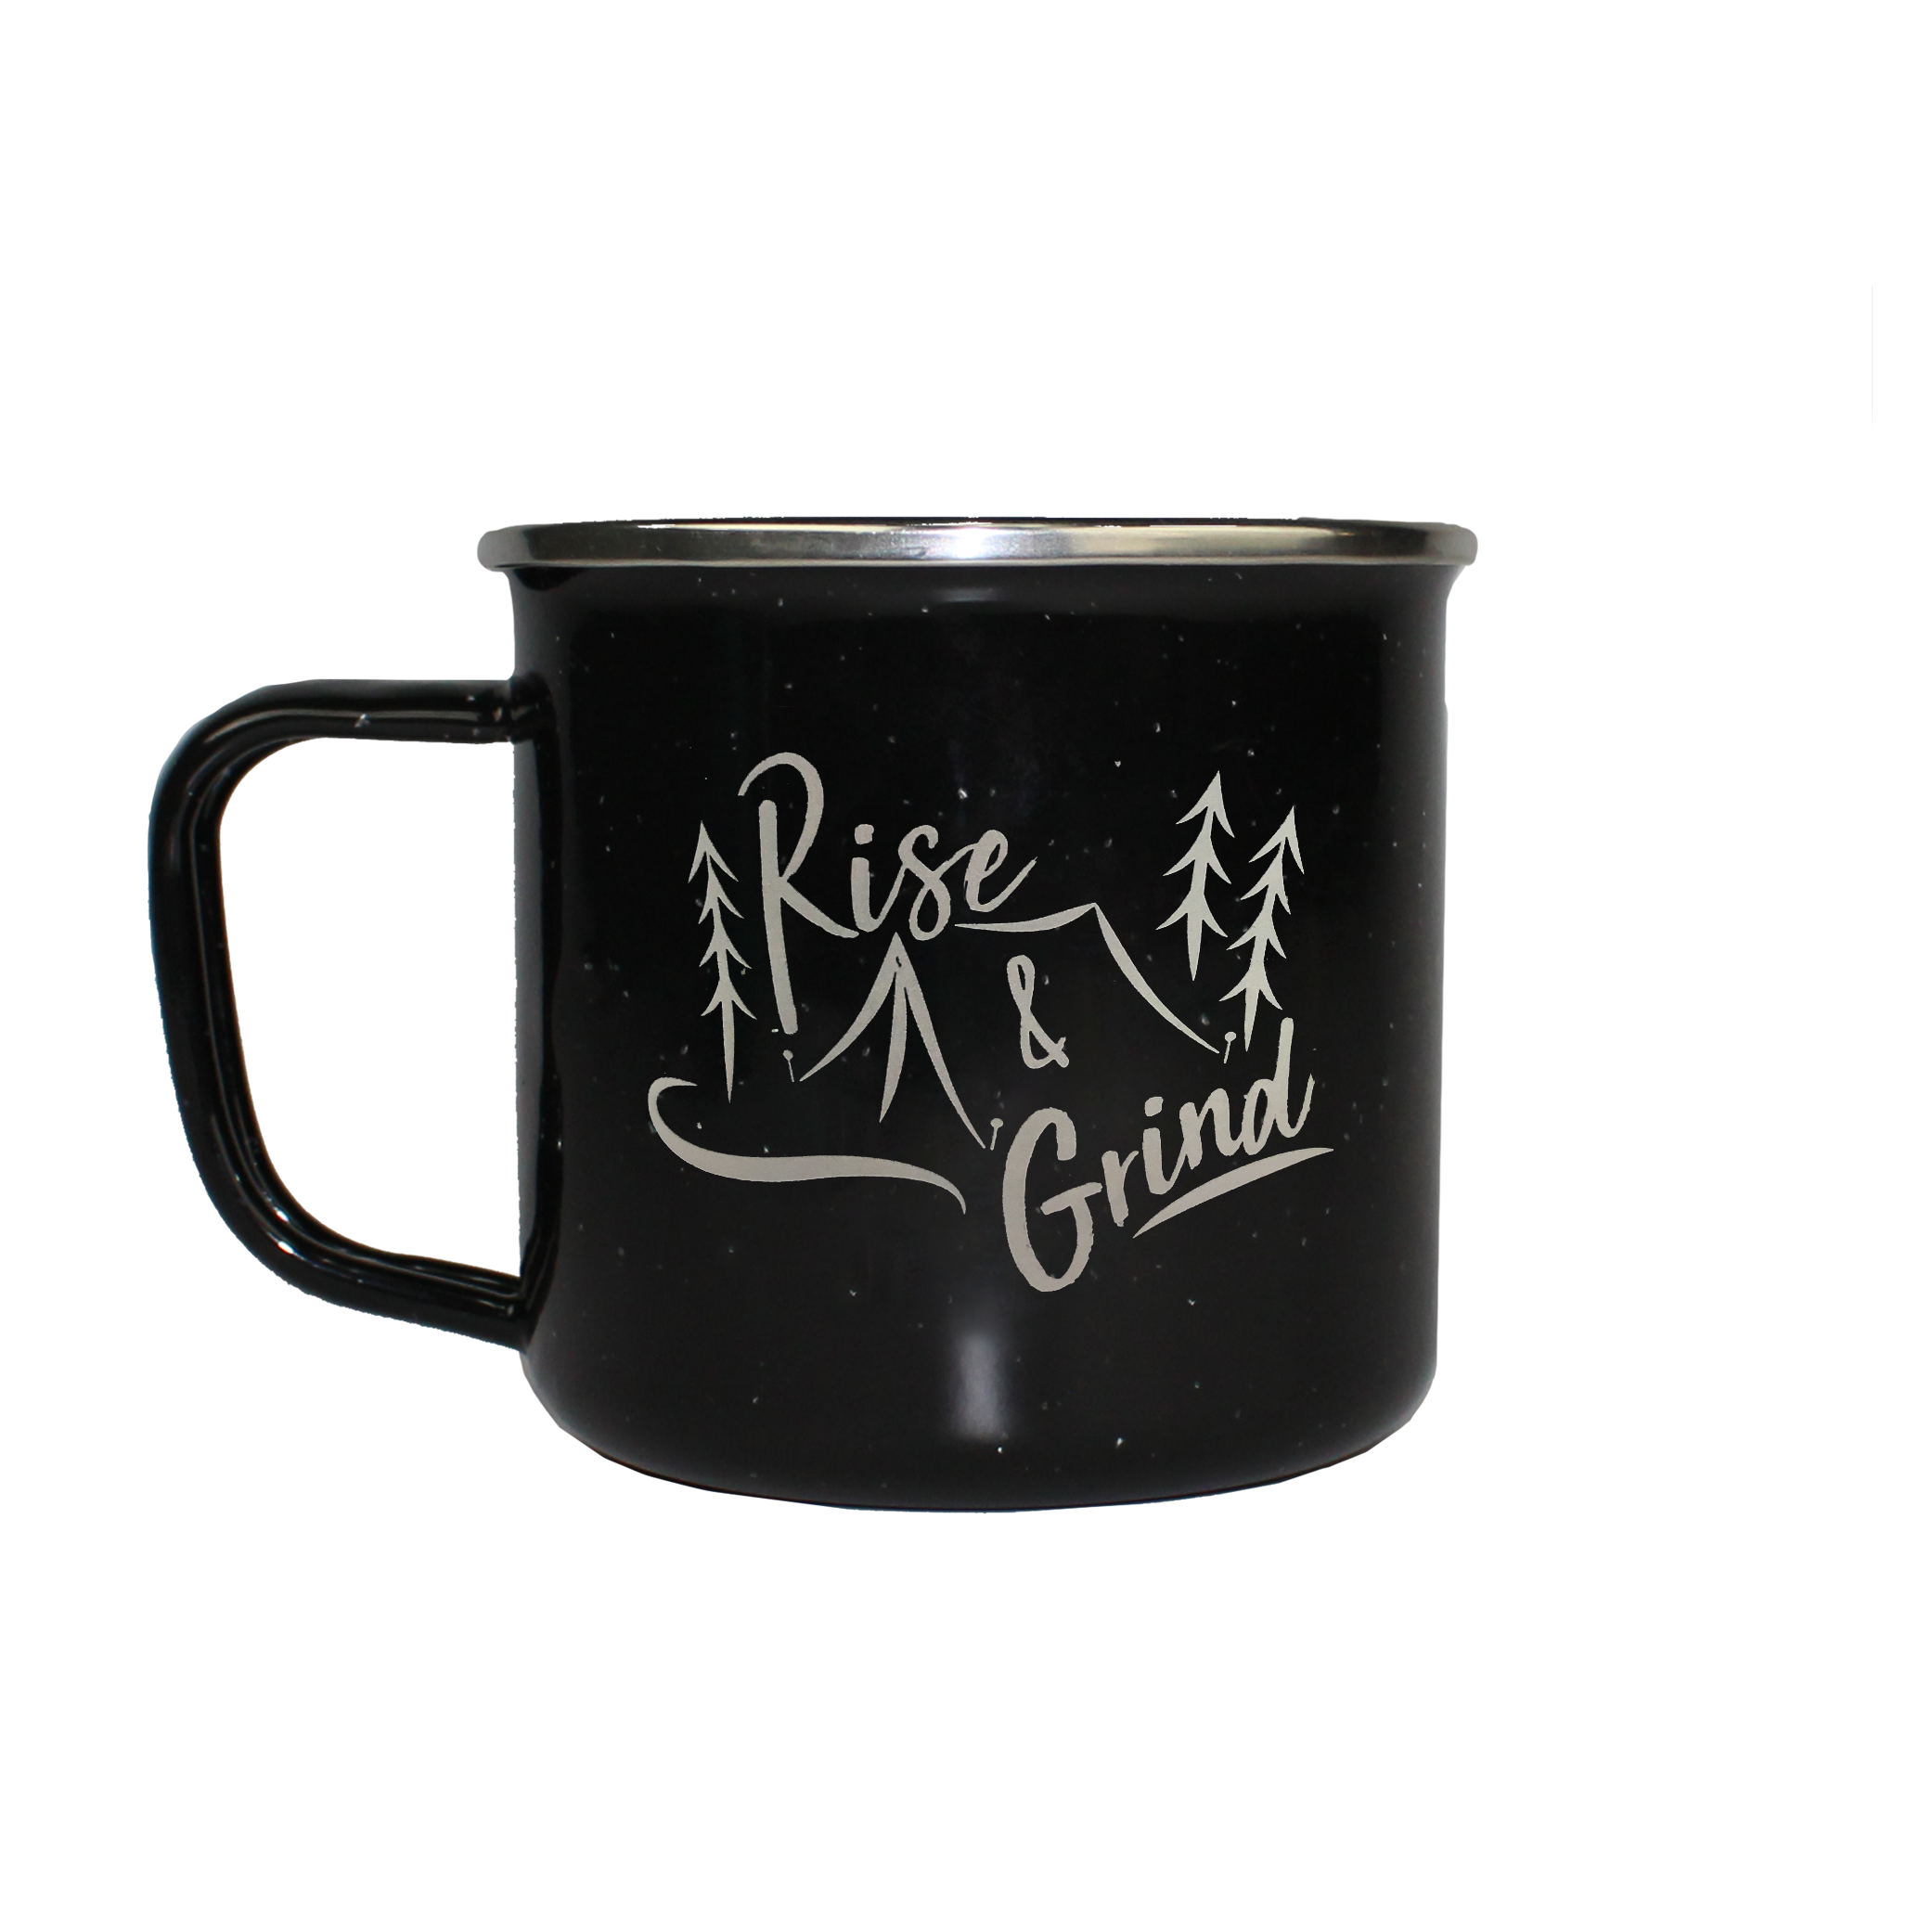 Rise & Grind Camper Mug 13oz. | White or Black color | Enamel with Stainless Steel Rim